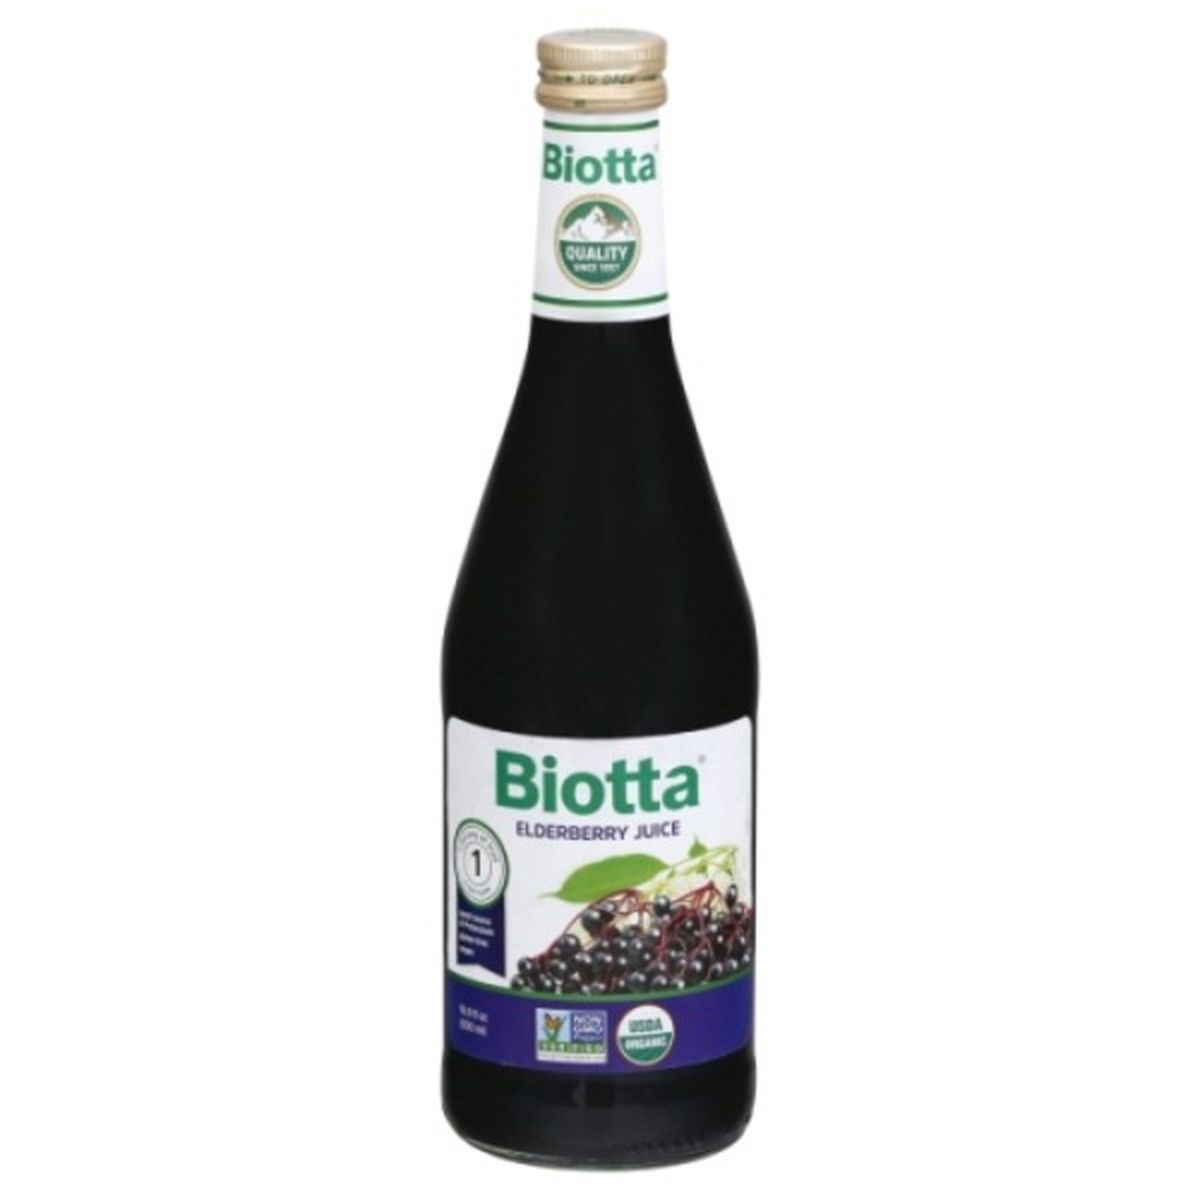 Calories in Biotta Juice, Elderberry